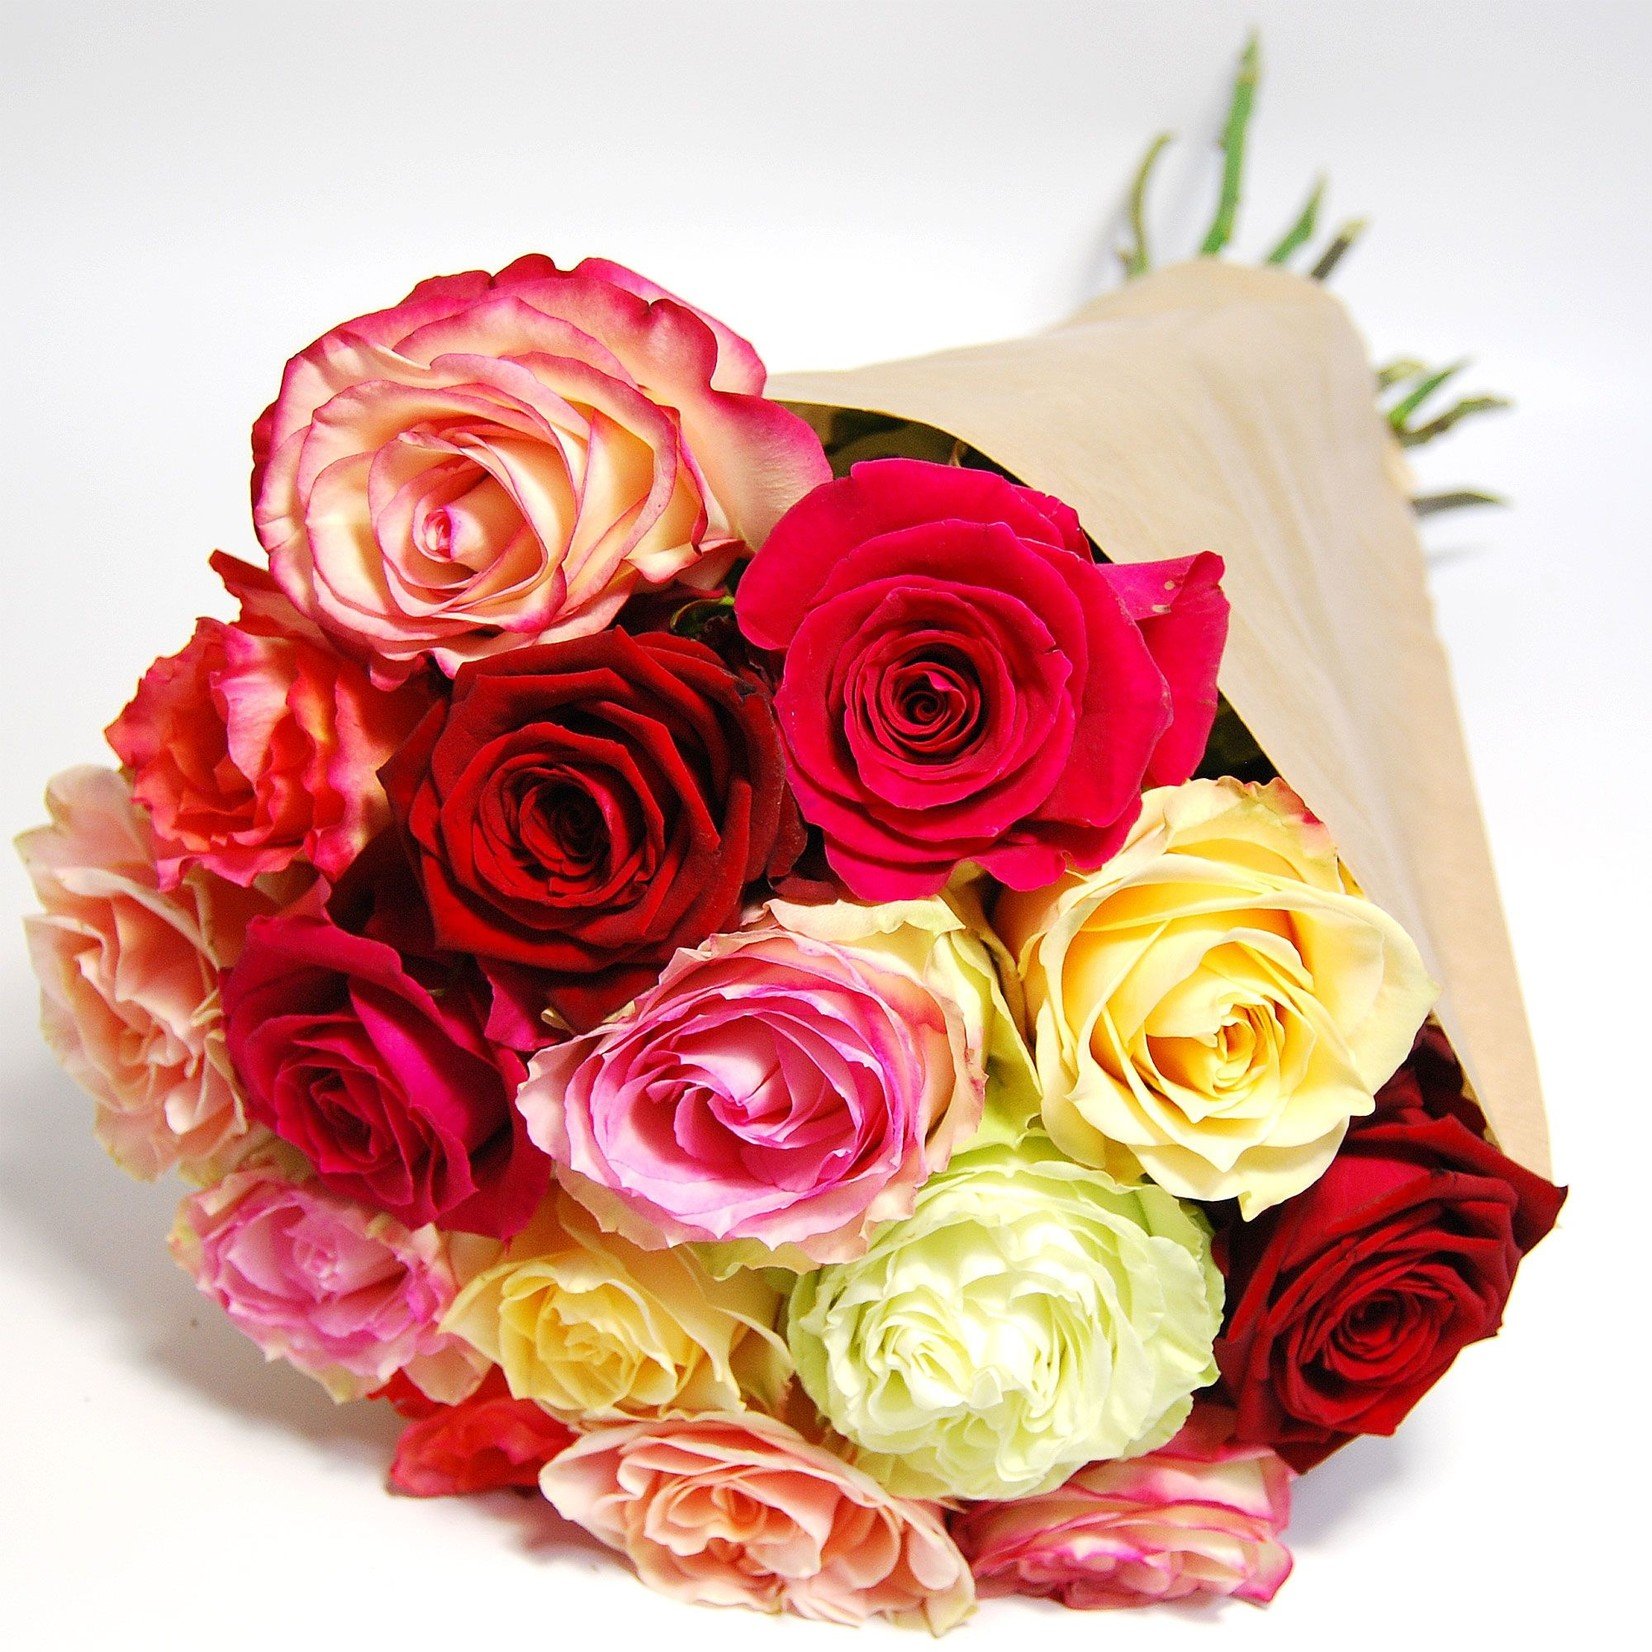 flotte Blumen Rosenstrauß gemischt mit 12 herrlichen Rosen in verschiedenen Farben